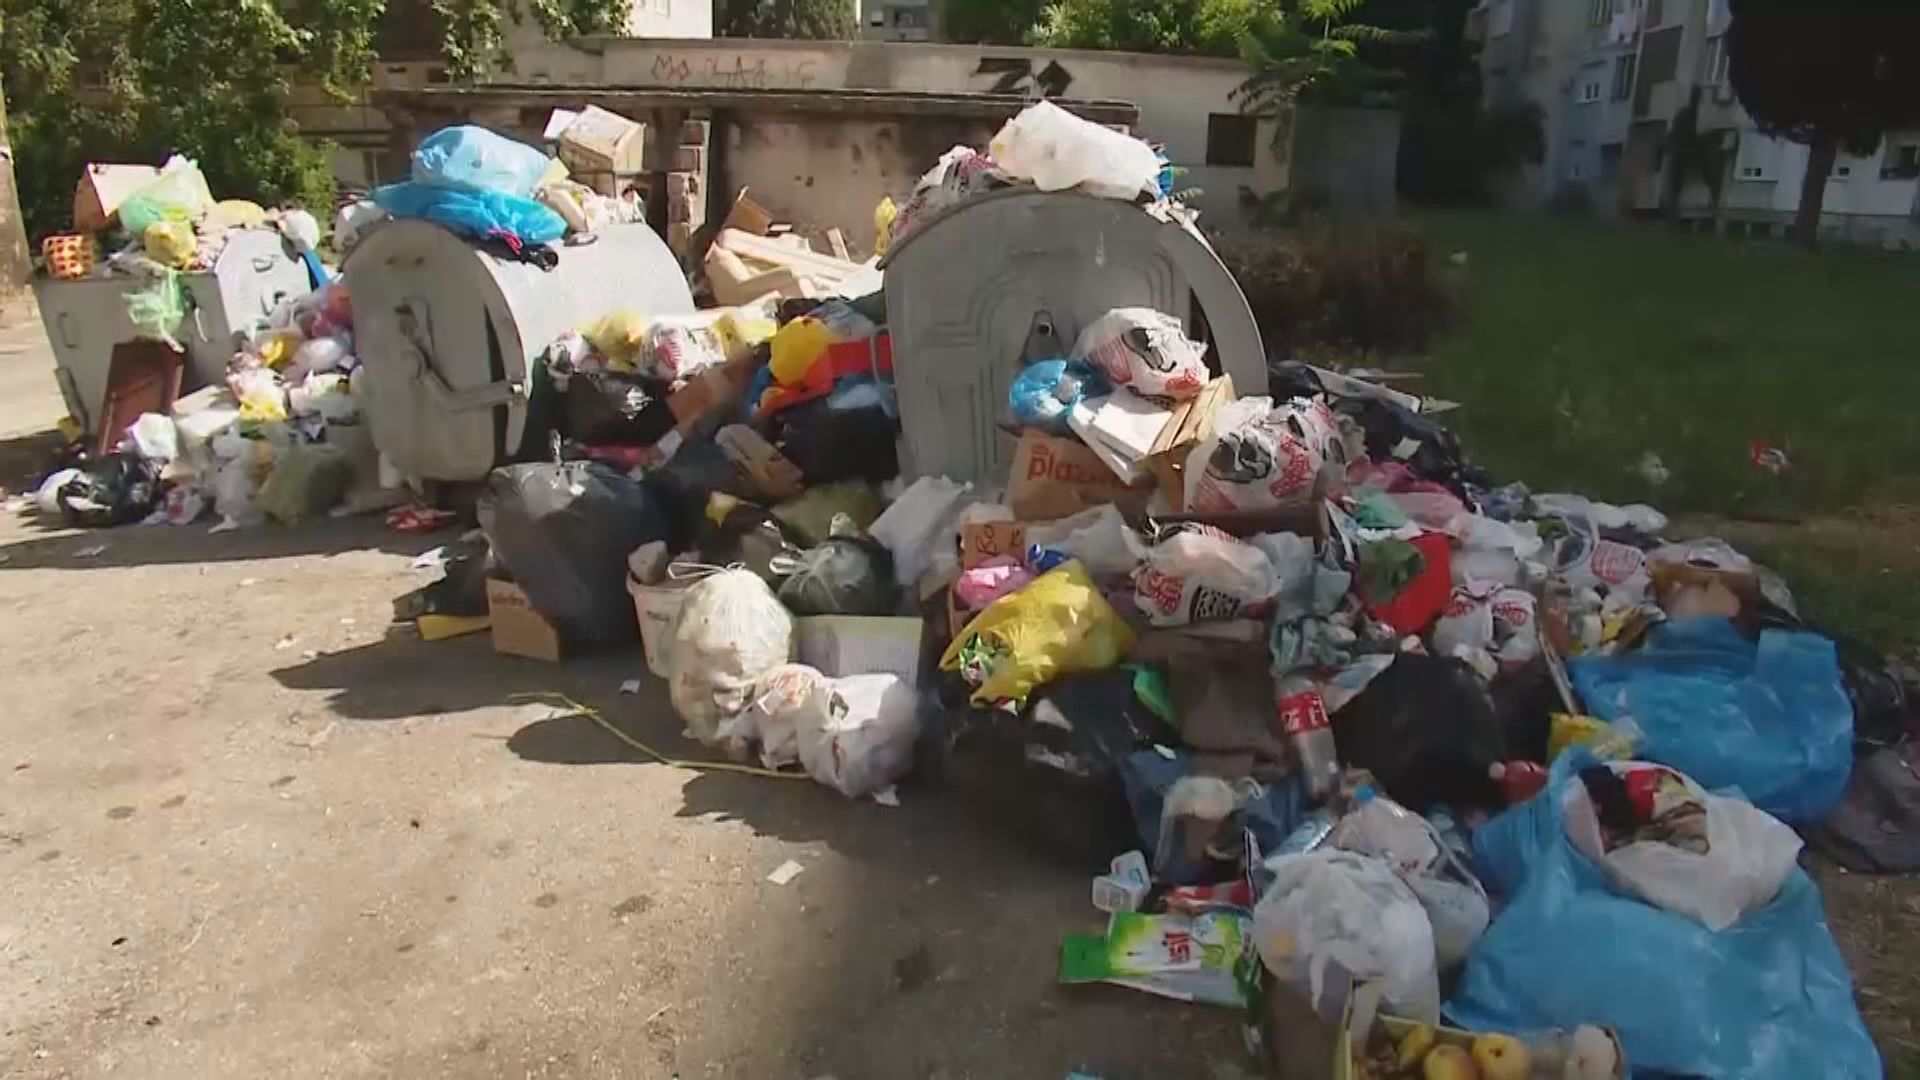 【環球薈報】波斯尼亞示威者阻垃圾運往堆填區